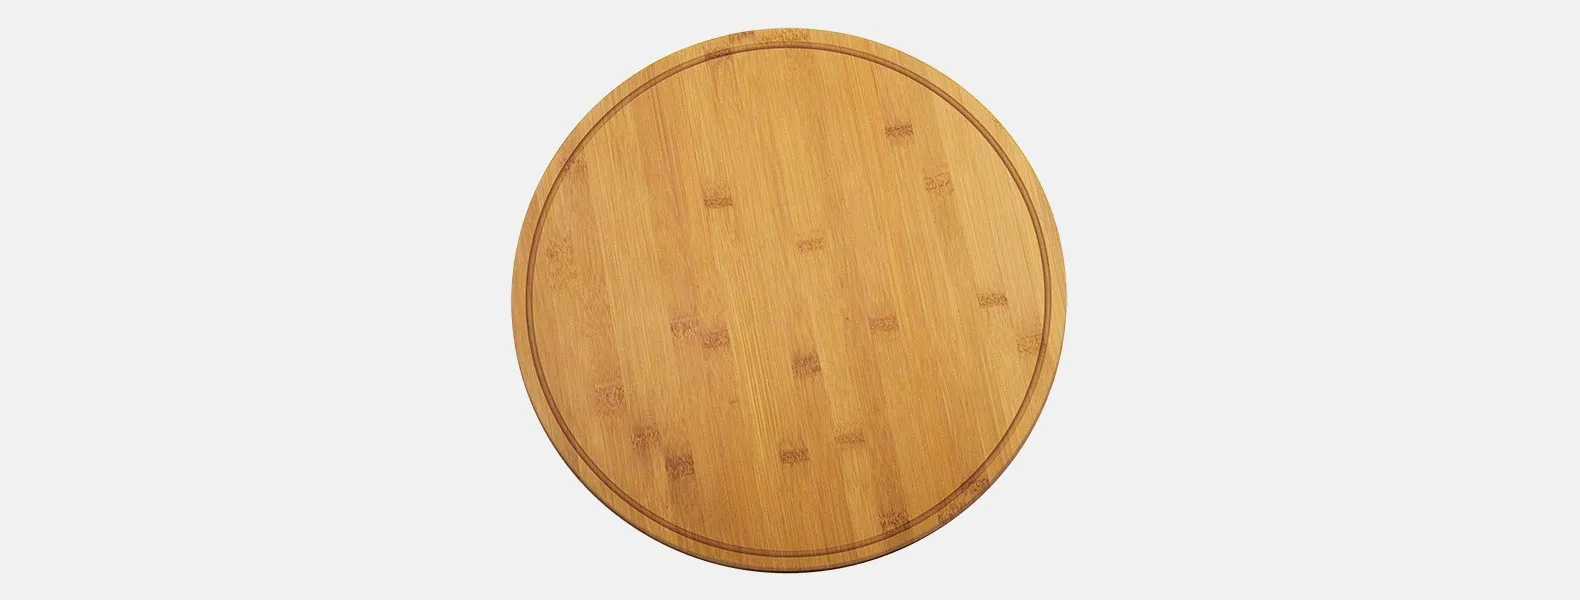 Conjunto para pizza em Bambu/Inox. Acompanha tábua e espátula em bambu; quatro facas de mesa, quatro garfos de mesa e cortador de pizza em Bambu/Inox. Embalagem ideal para presentear.